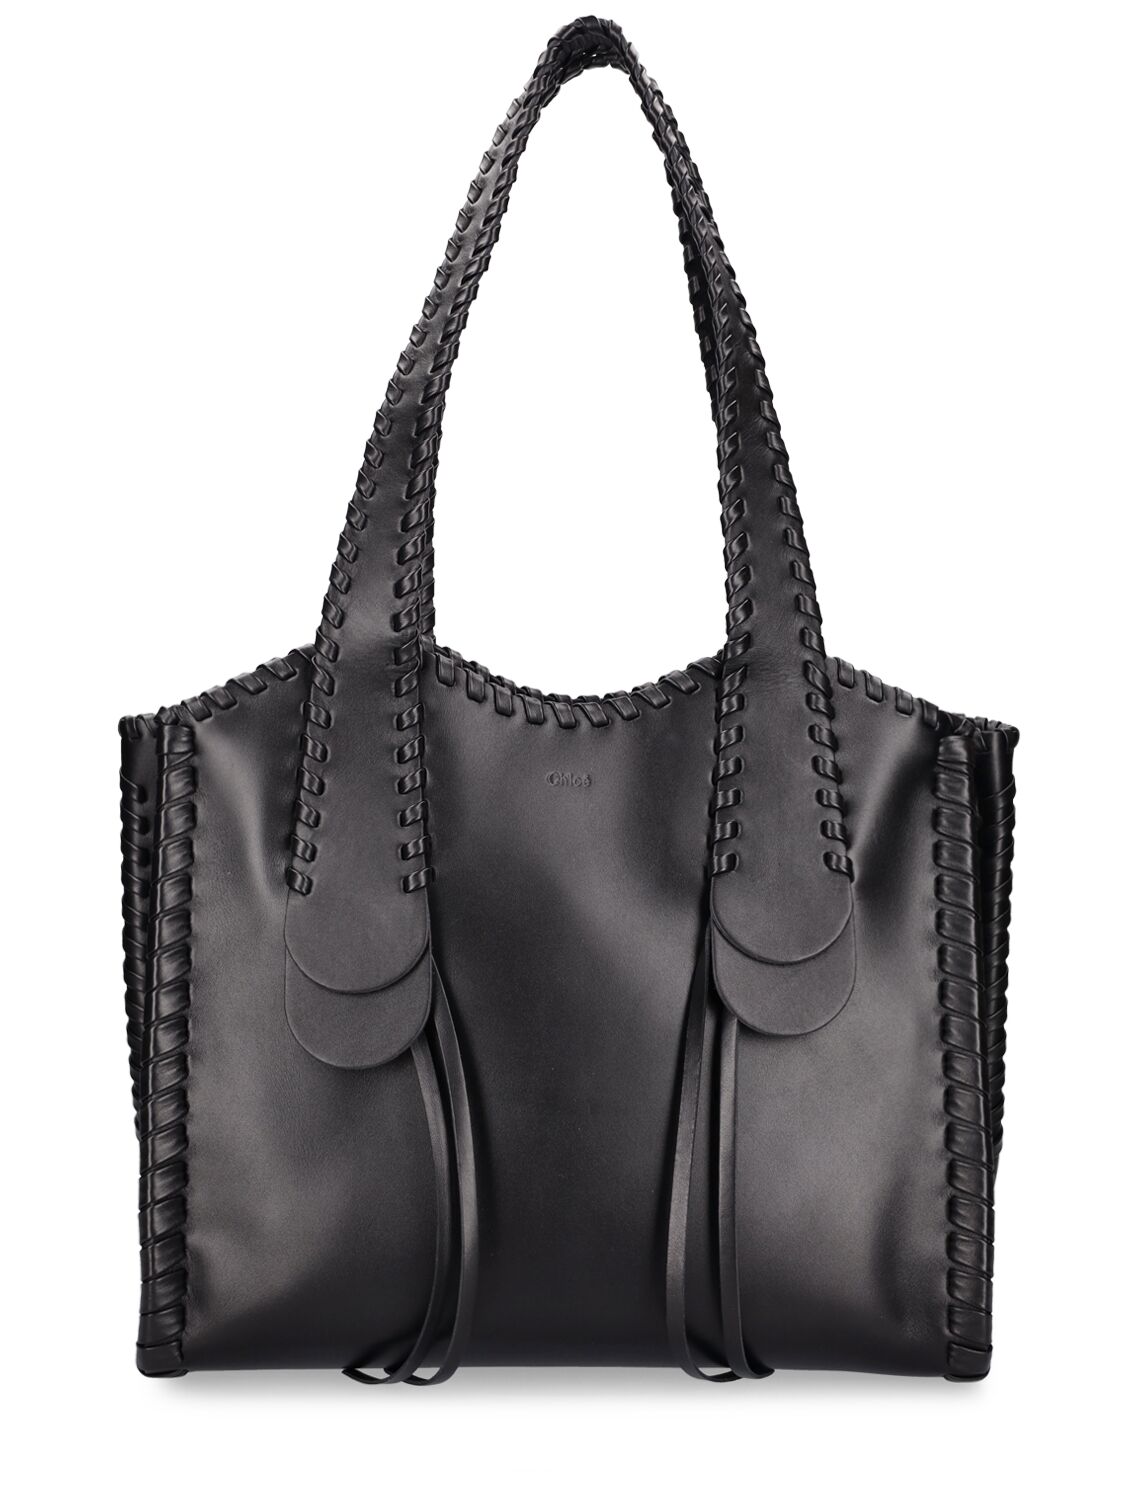 Medium Mony Leather Tote Bag - CHLOÉ - Modalova